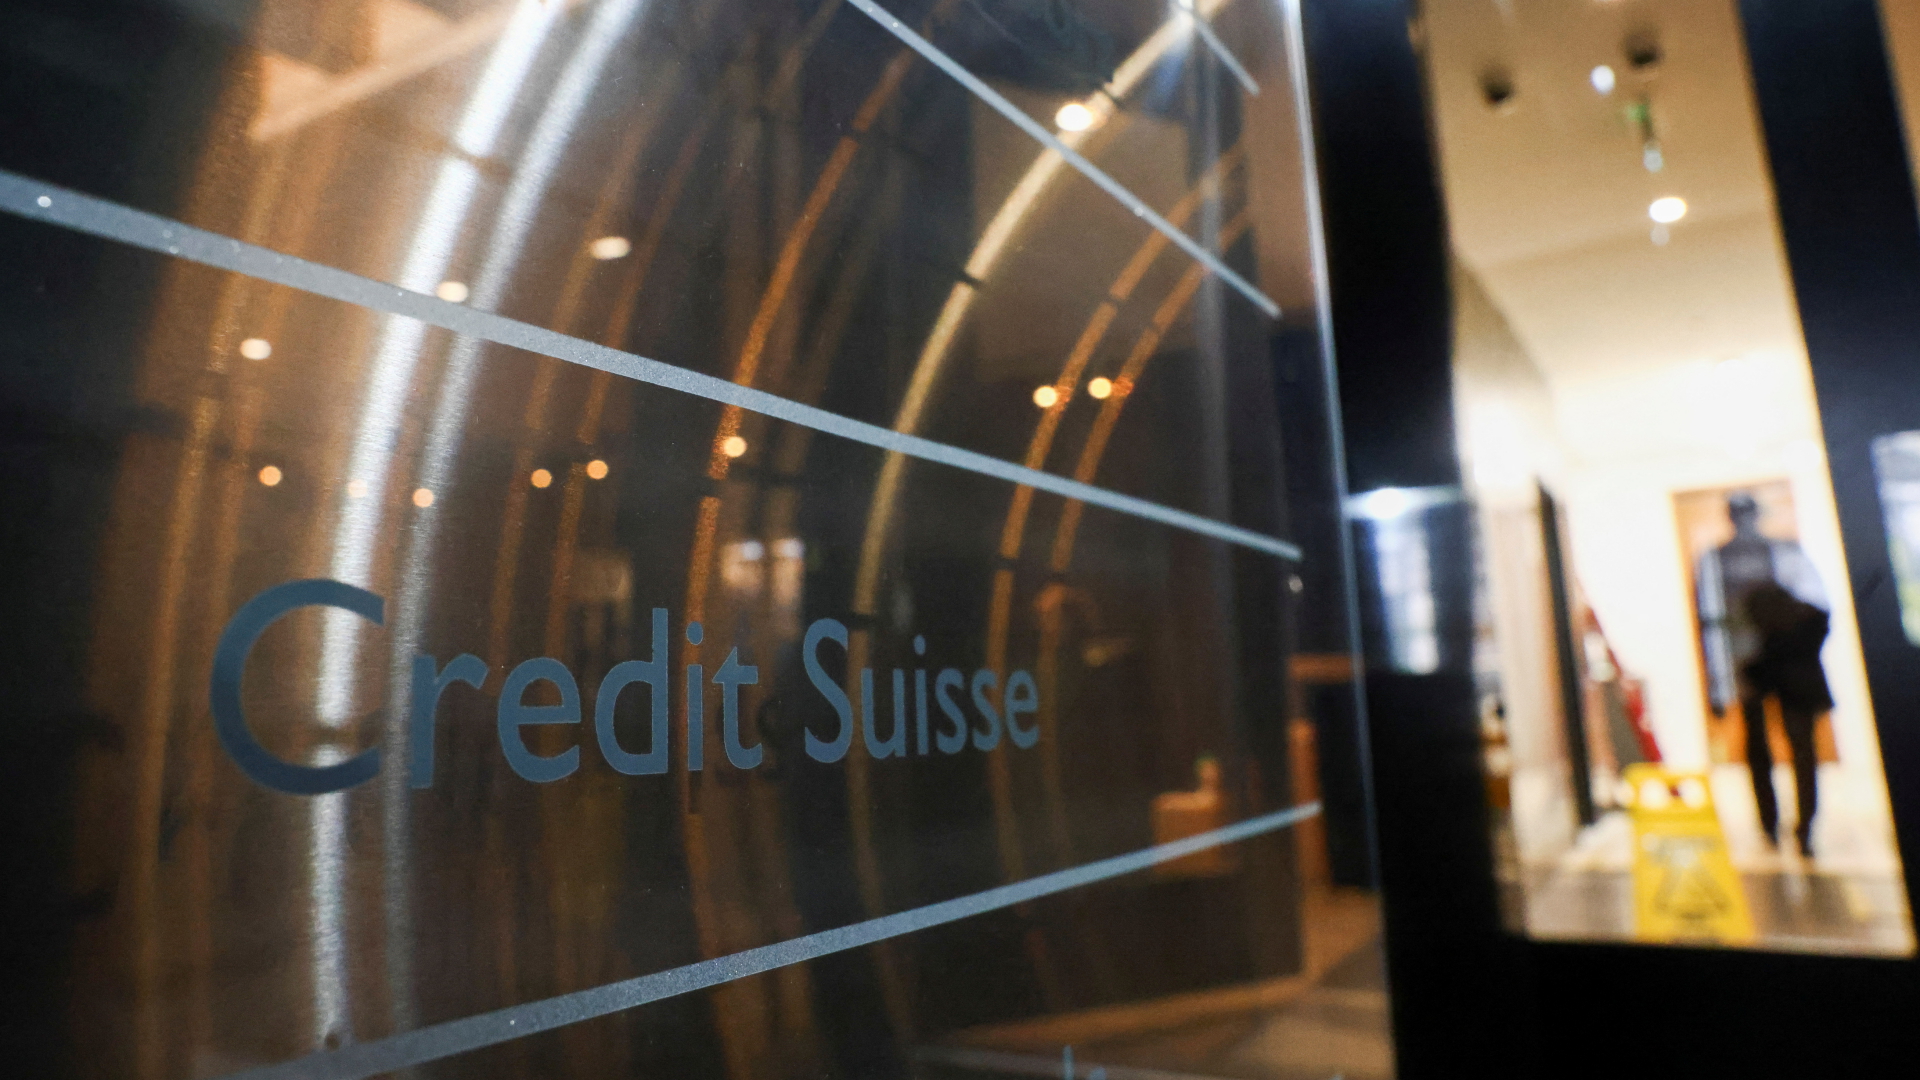 Nach Rettung der Credit Suisse: “Deutsches Finanzsystem ist stabil”